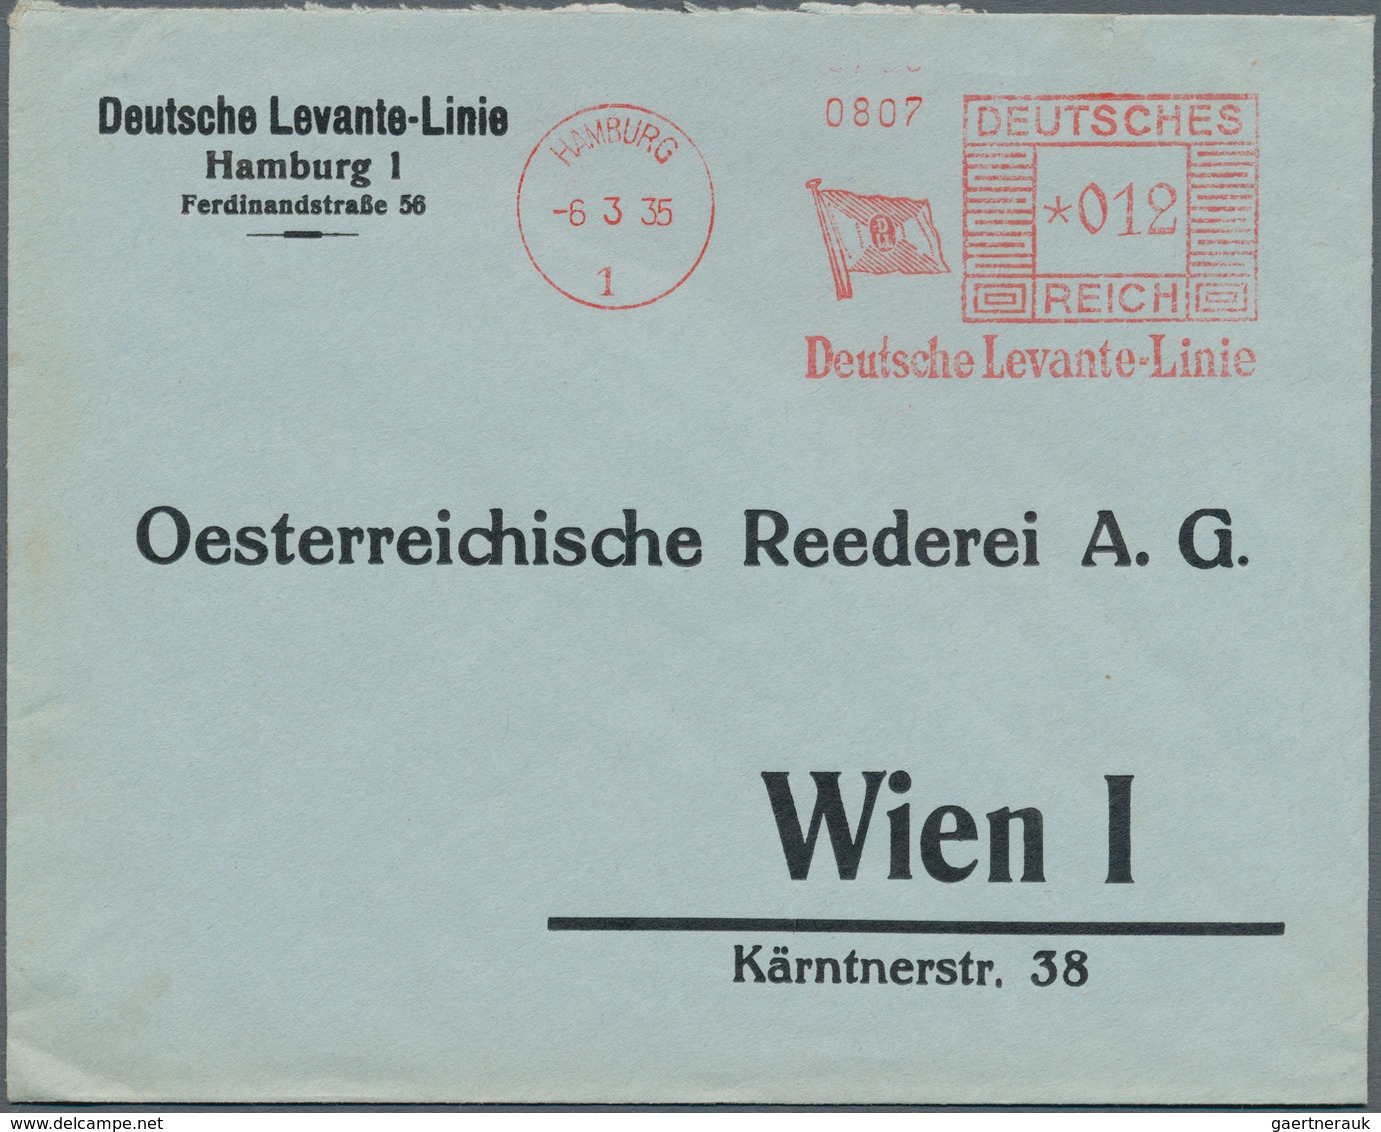 Deutsche Schiffspost im Ausland - Seepost: 1920/1945, Partie von über 80 Belegen mit vielen interess